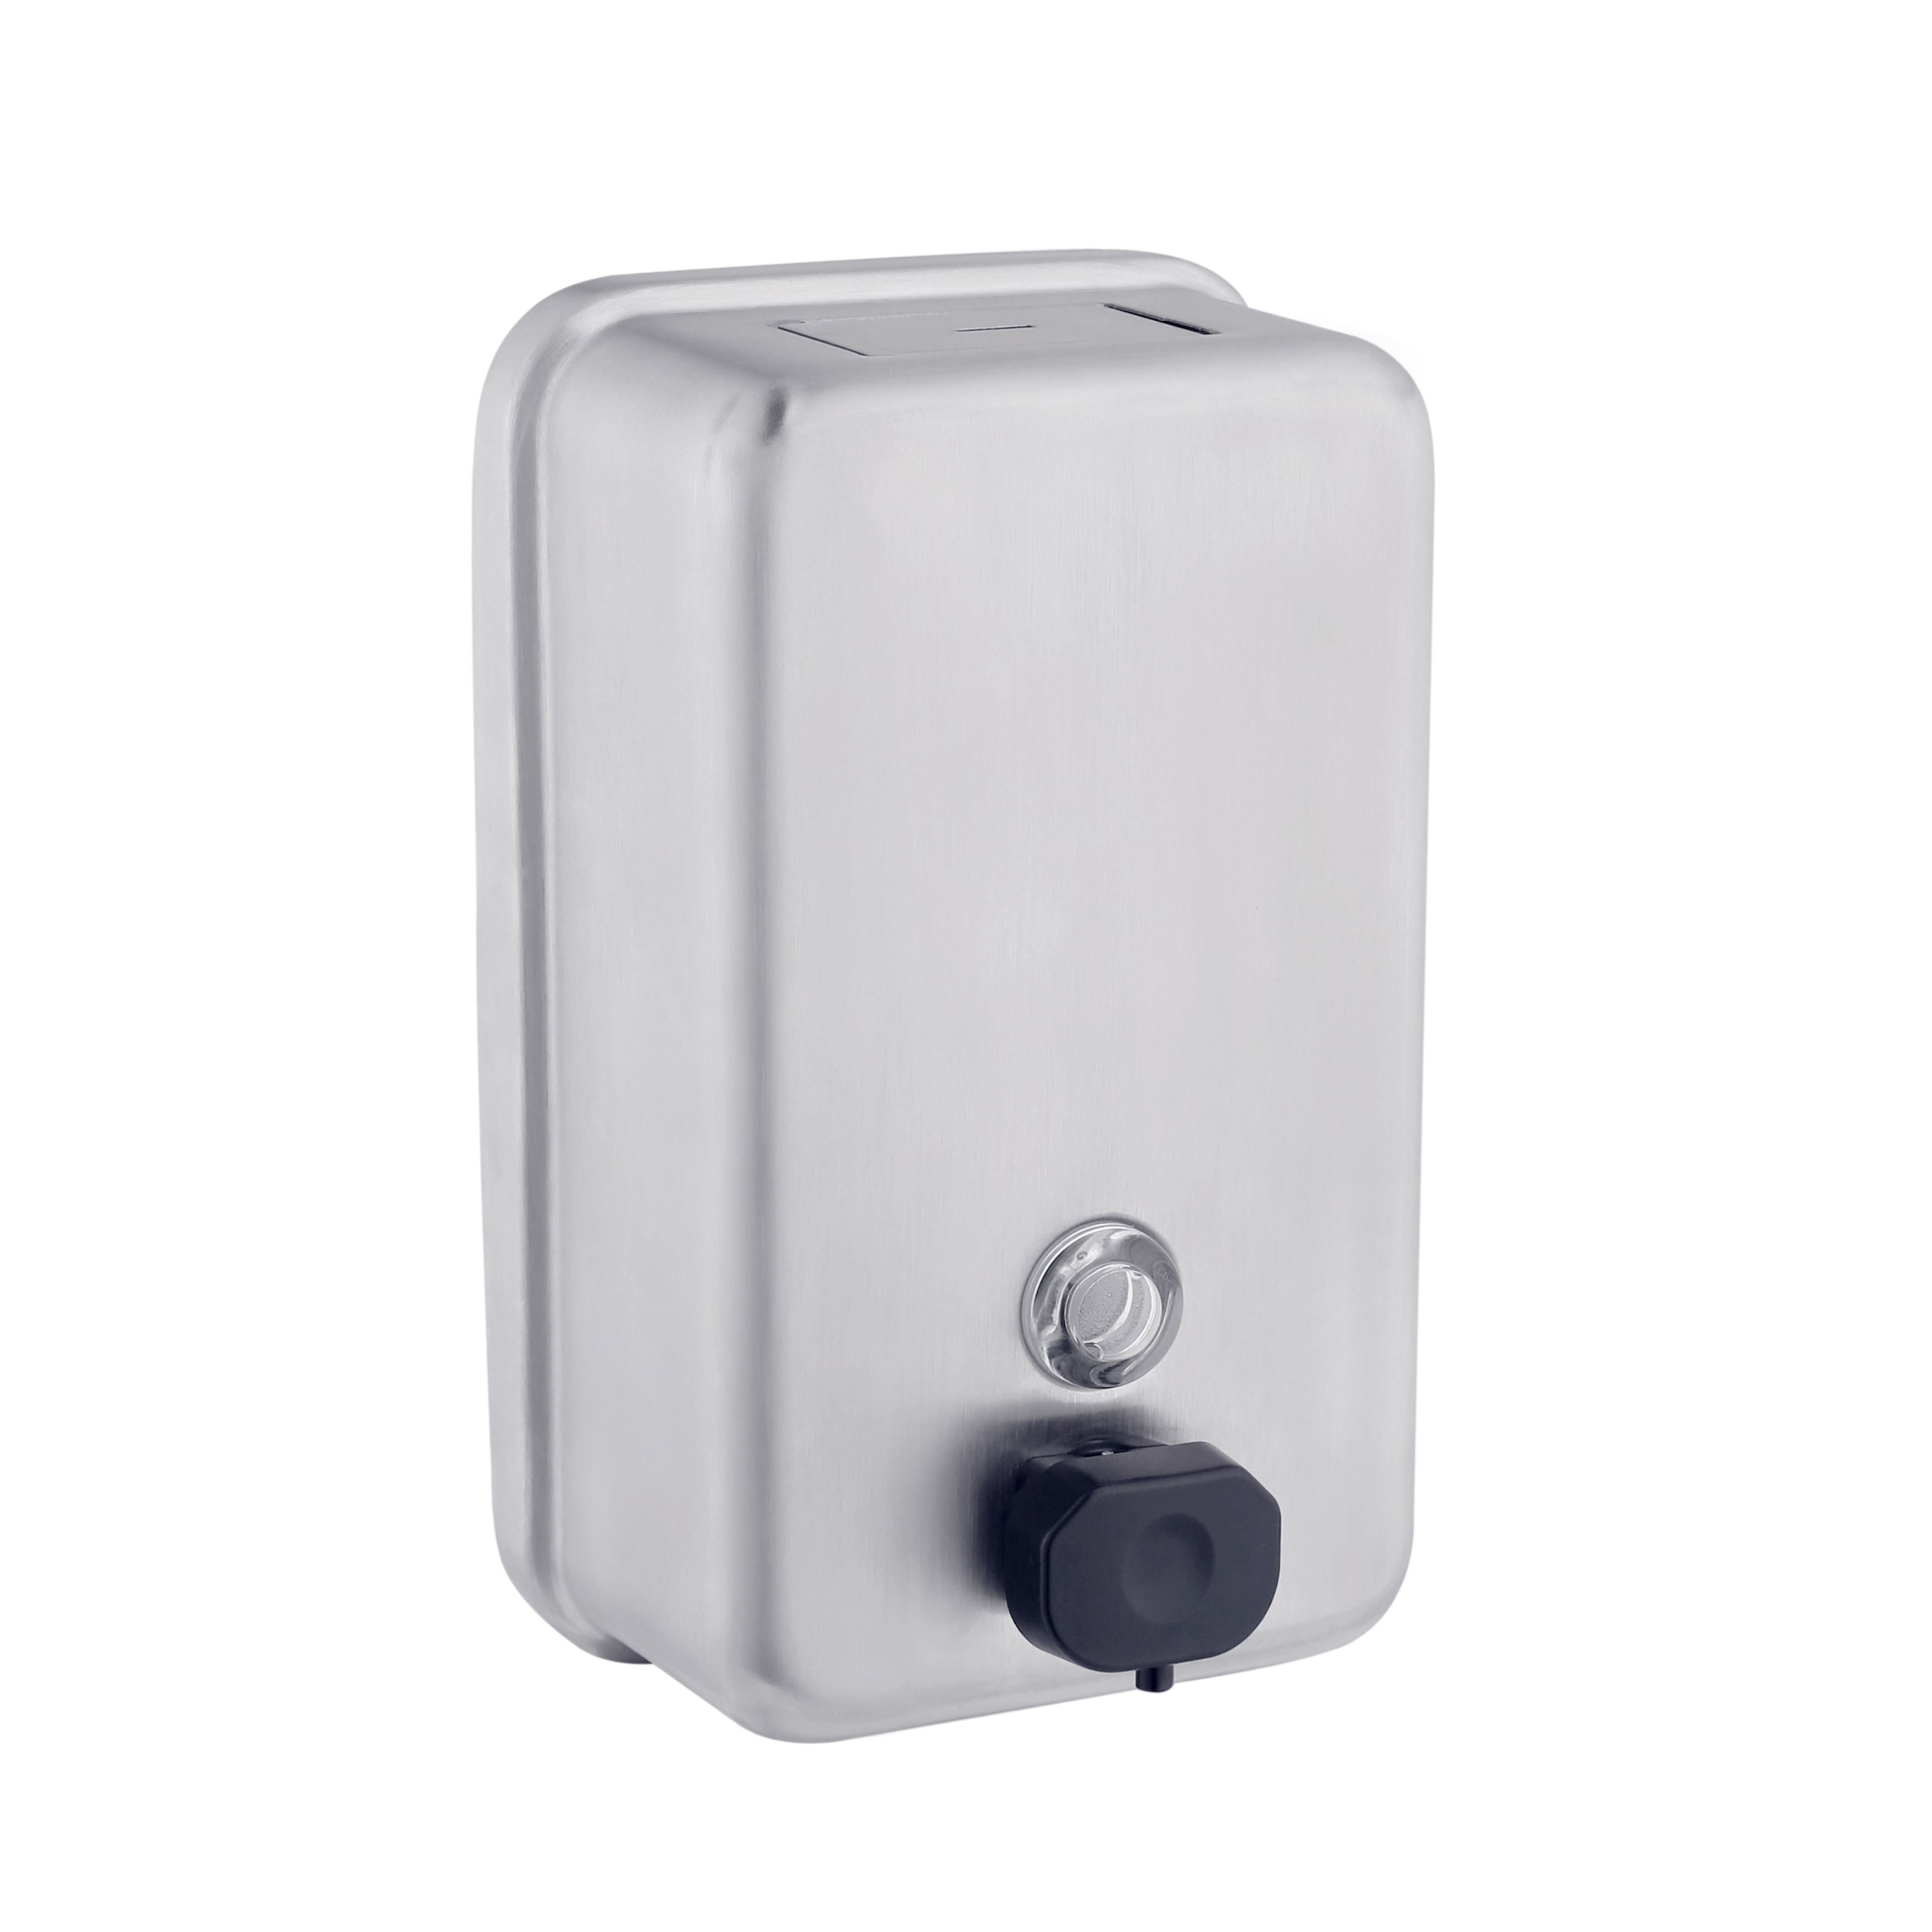 Stainless Steel Commercial Soap Dispenser 1.2L